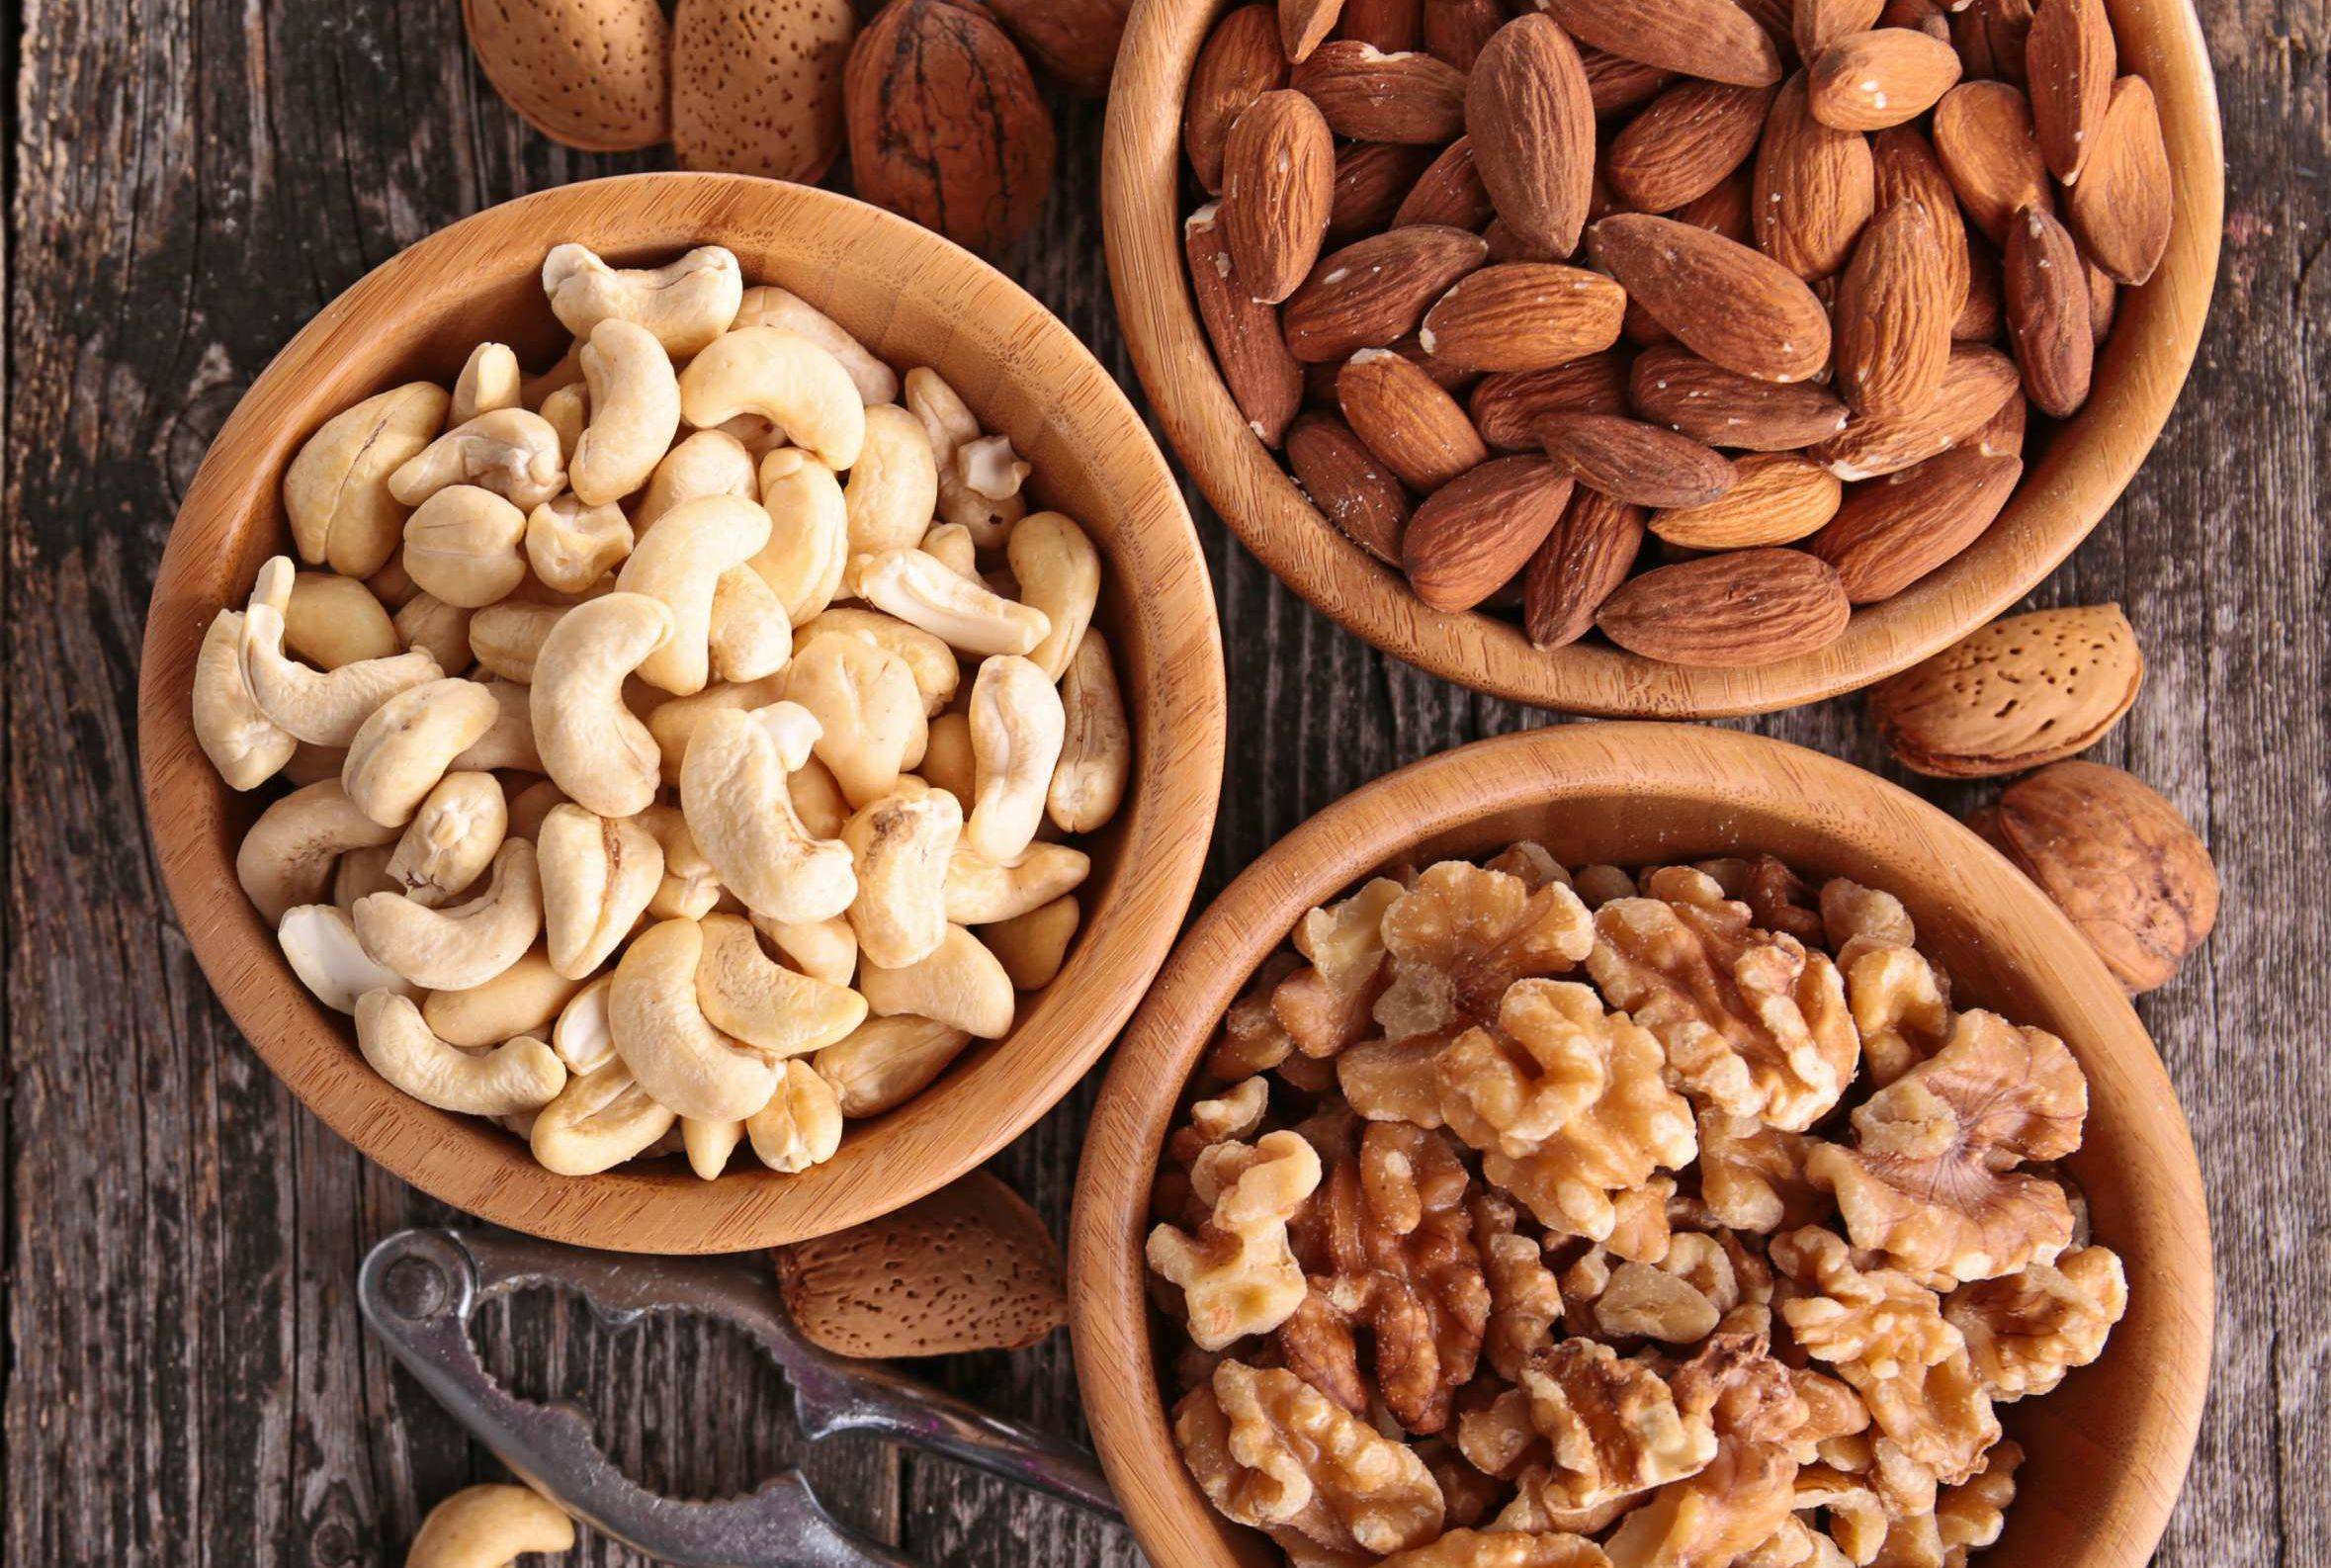 Какие орехи можно давать шиншиллам: грецкие и арахис, фундук и кедровые орехи, миндаль и кешью, можно ли давать семечки вместо орехов